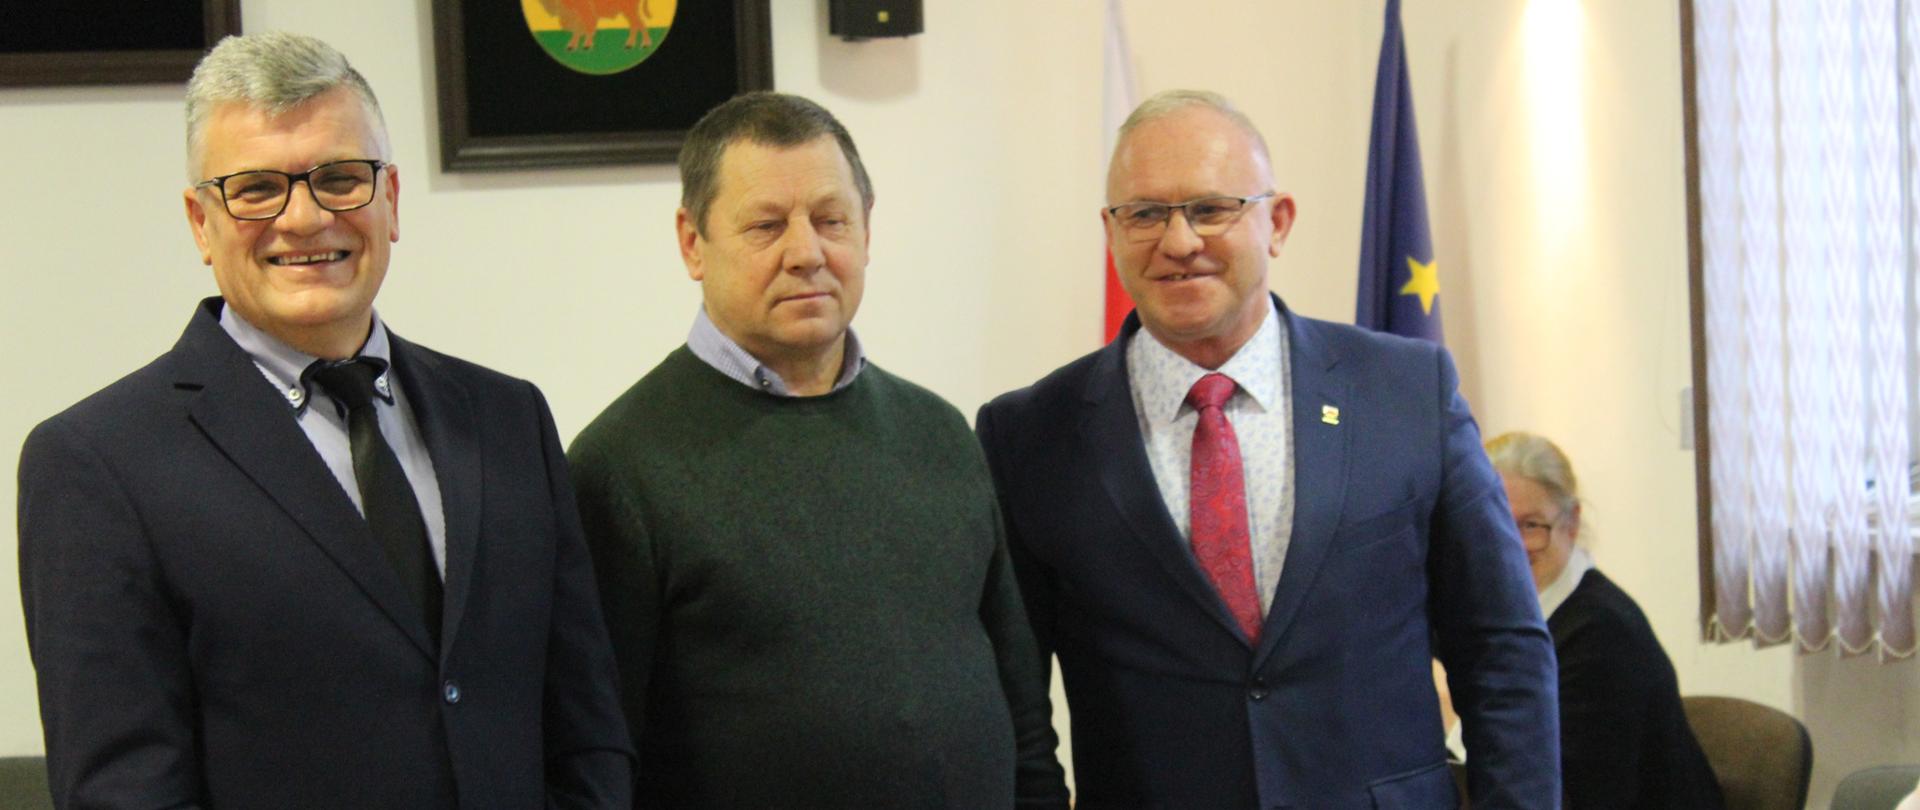 Przewodniczący Rady, nagrodzony pszczelarz i Starosta Hajnowski pozują do wspólnego zdjęcia